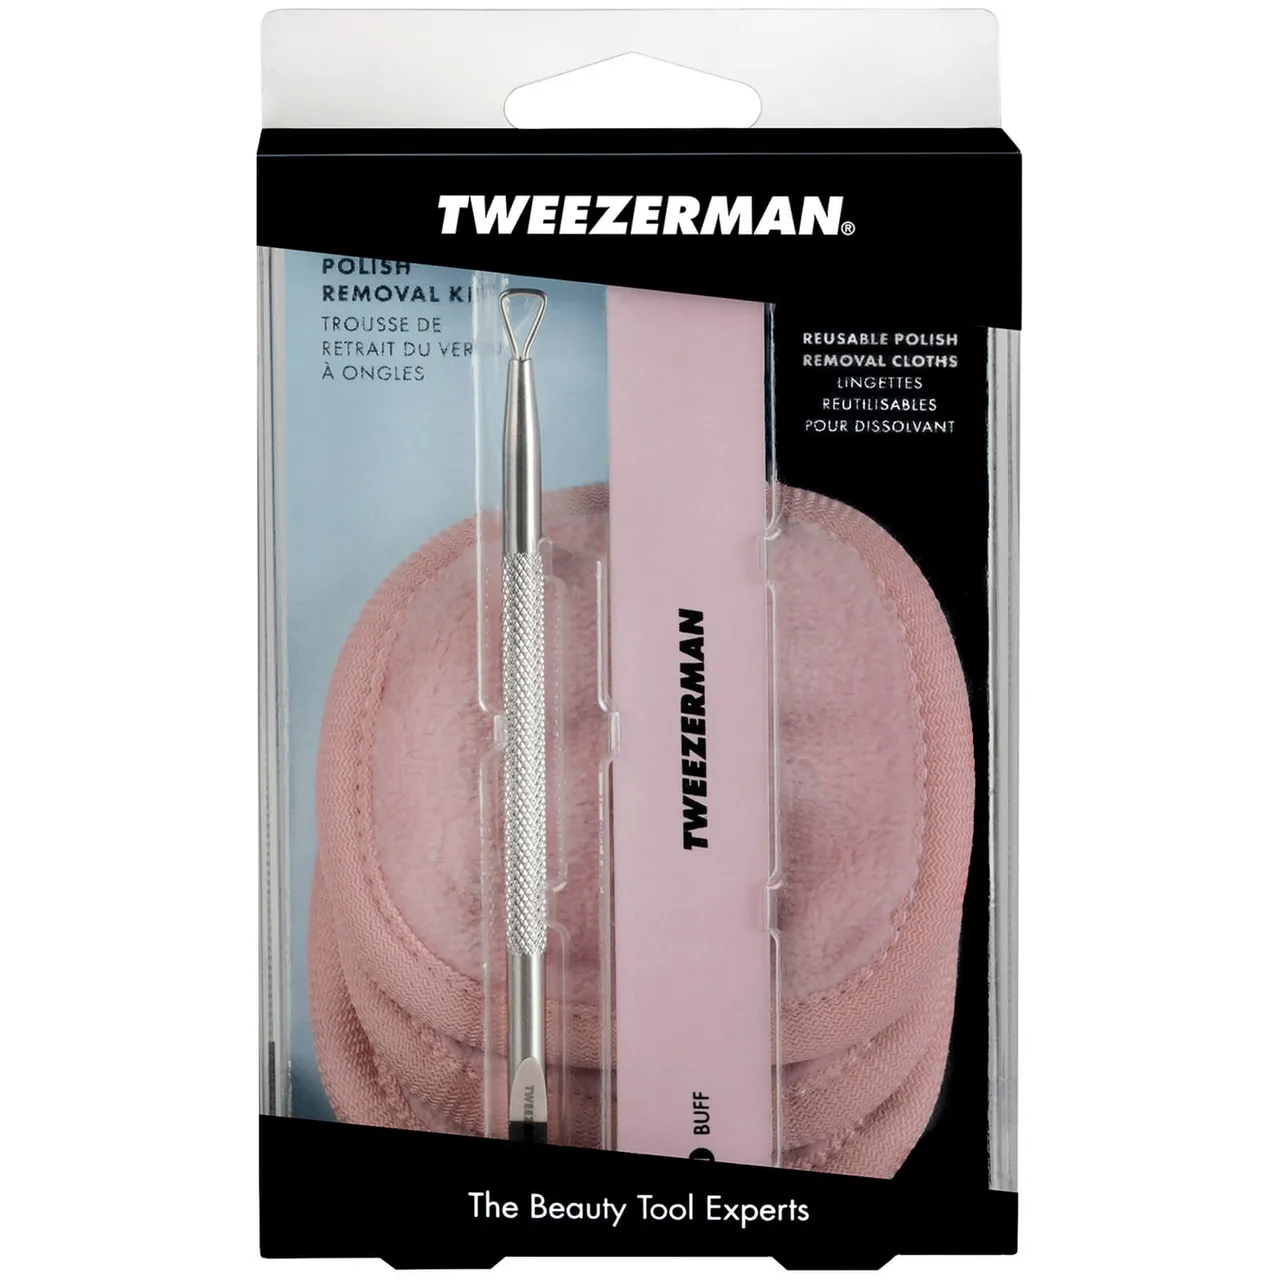 Tweezerman Polish Removal Kit